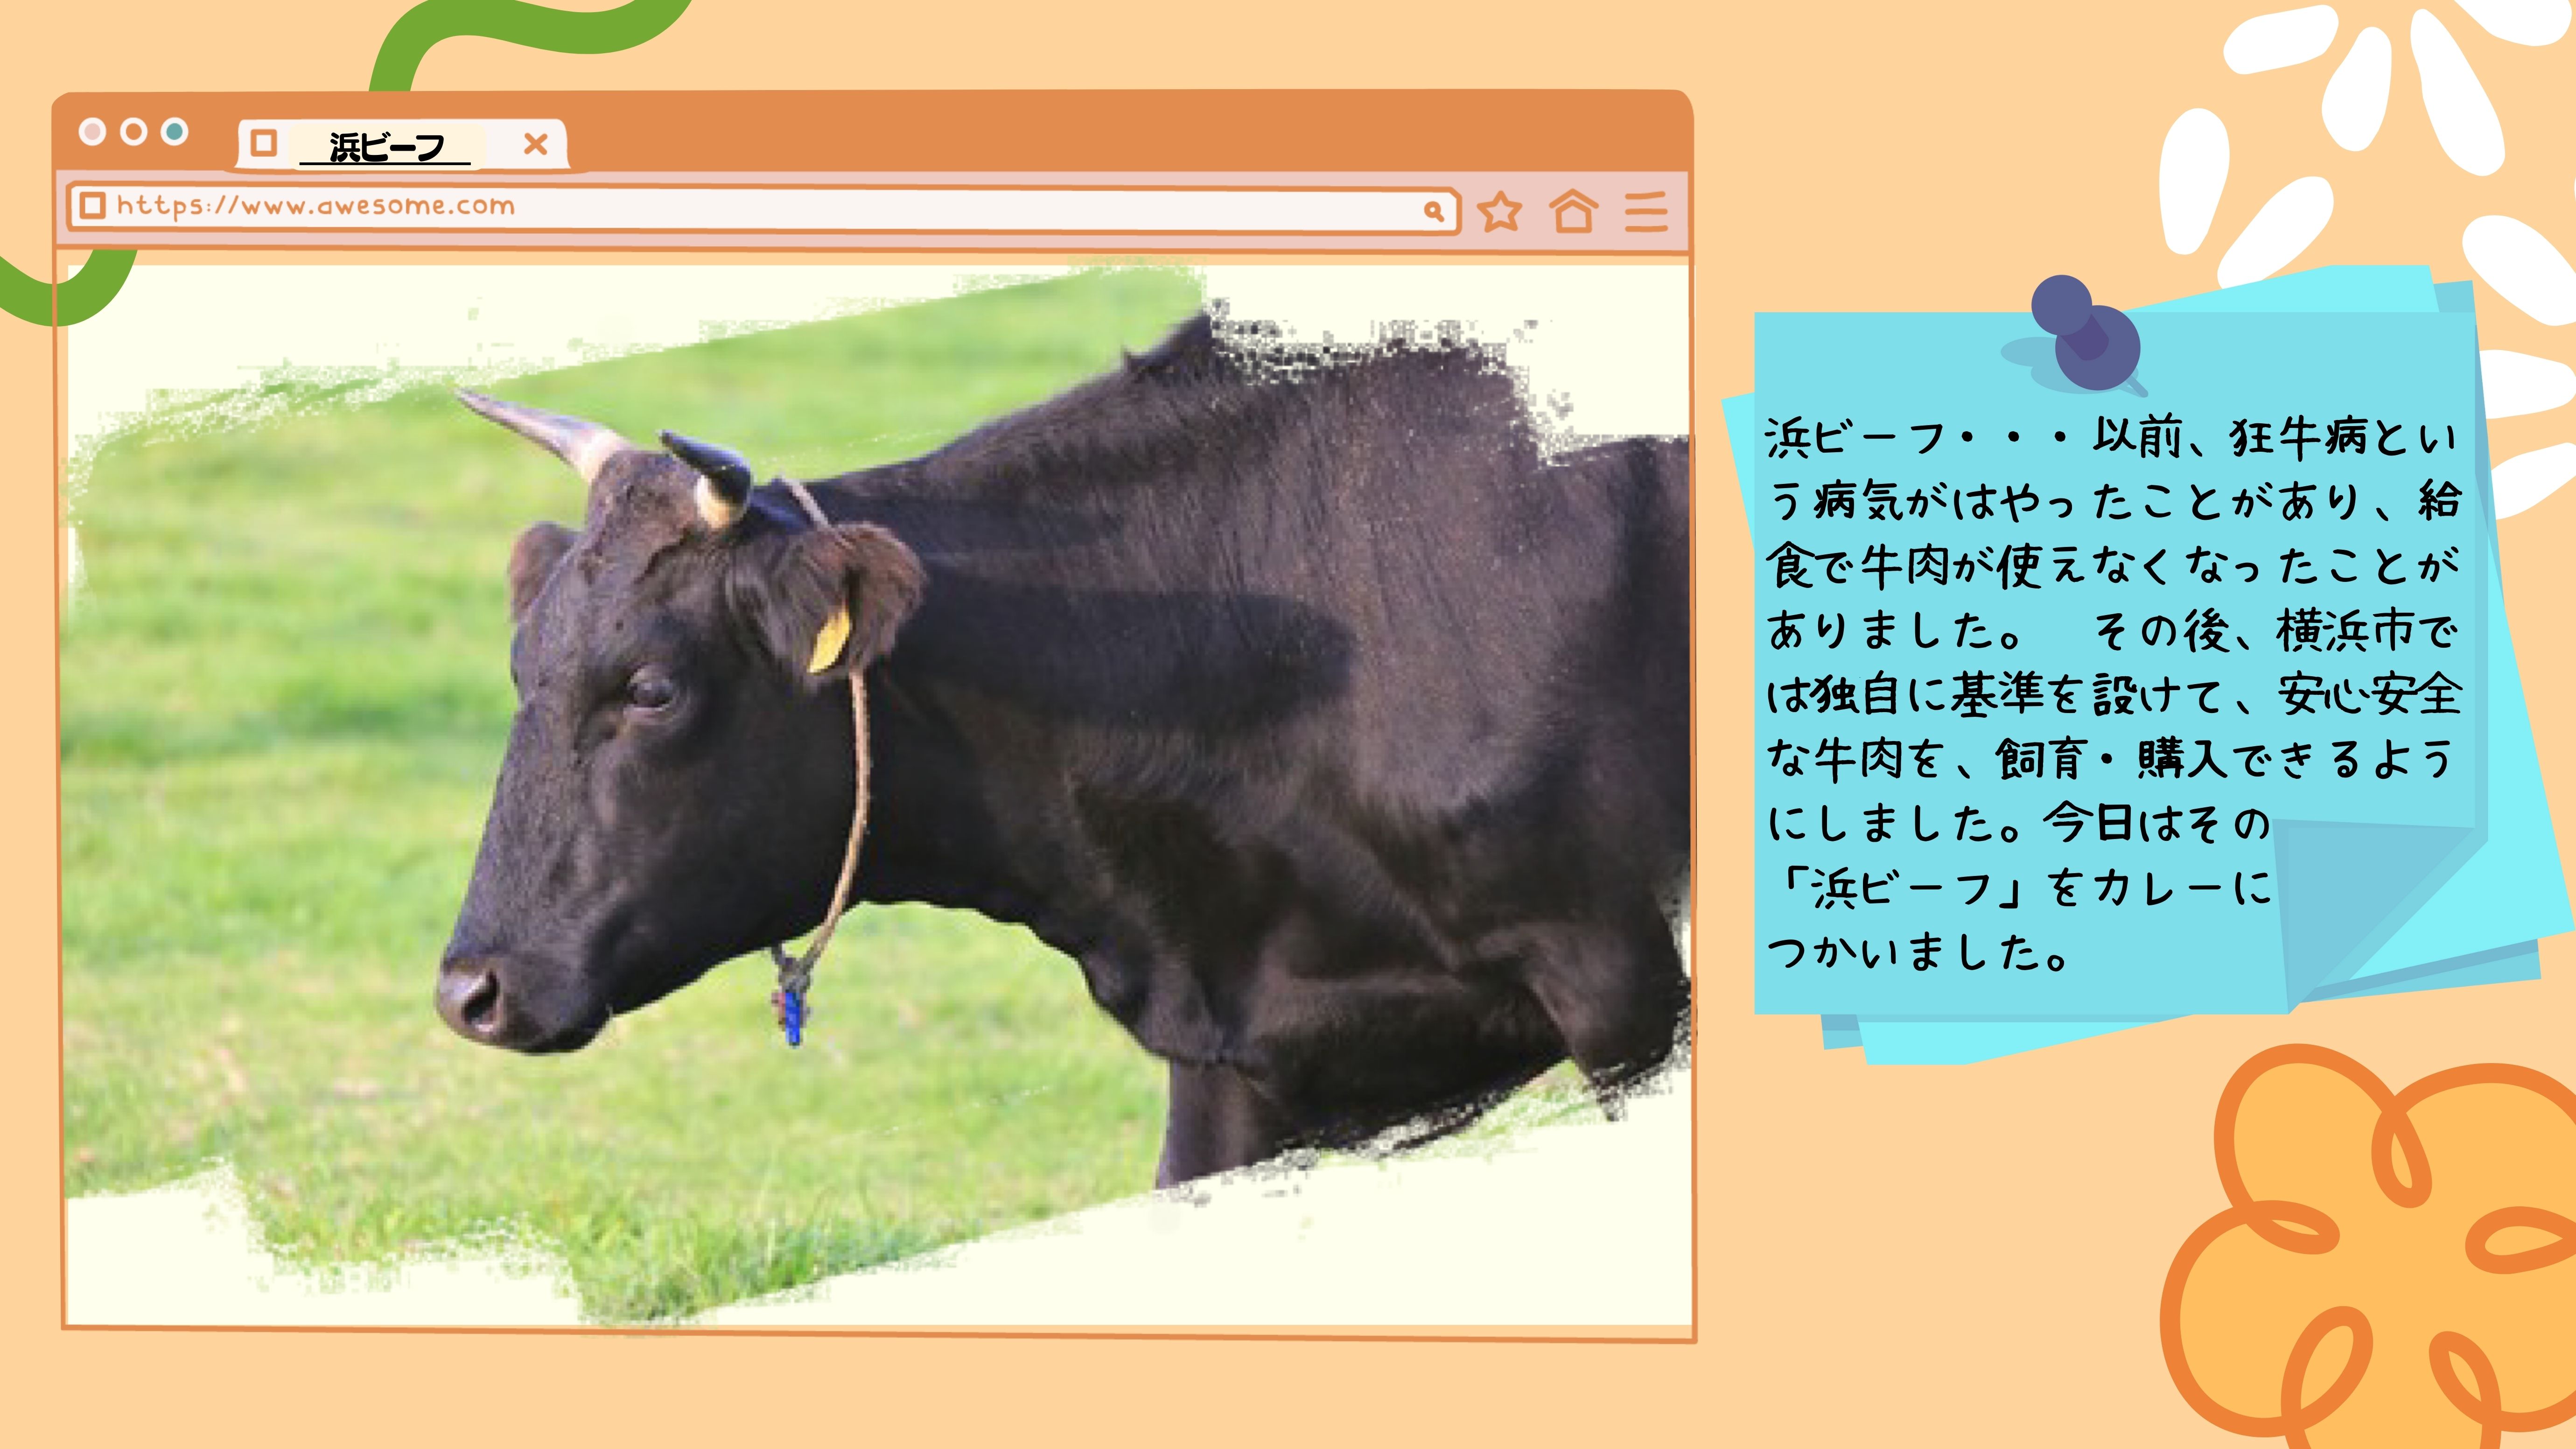 浜ビーフ：以前、狂牛病という病気がはやったことがあり、給食で牛肉が使えなくなったことがありました。　その後、横浜市では独自に基準を設けて、安心安全な牛肉を、飼育・購入できるようにしました。今日はその 「浜ビーフ」をカレーに つかいました。